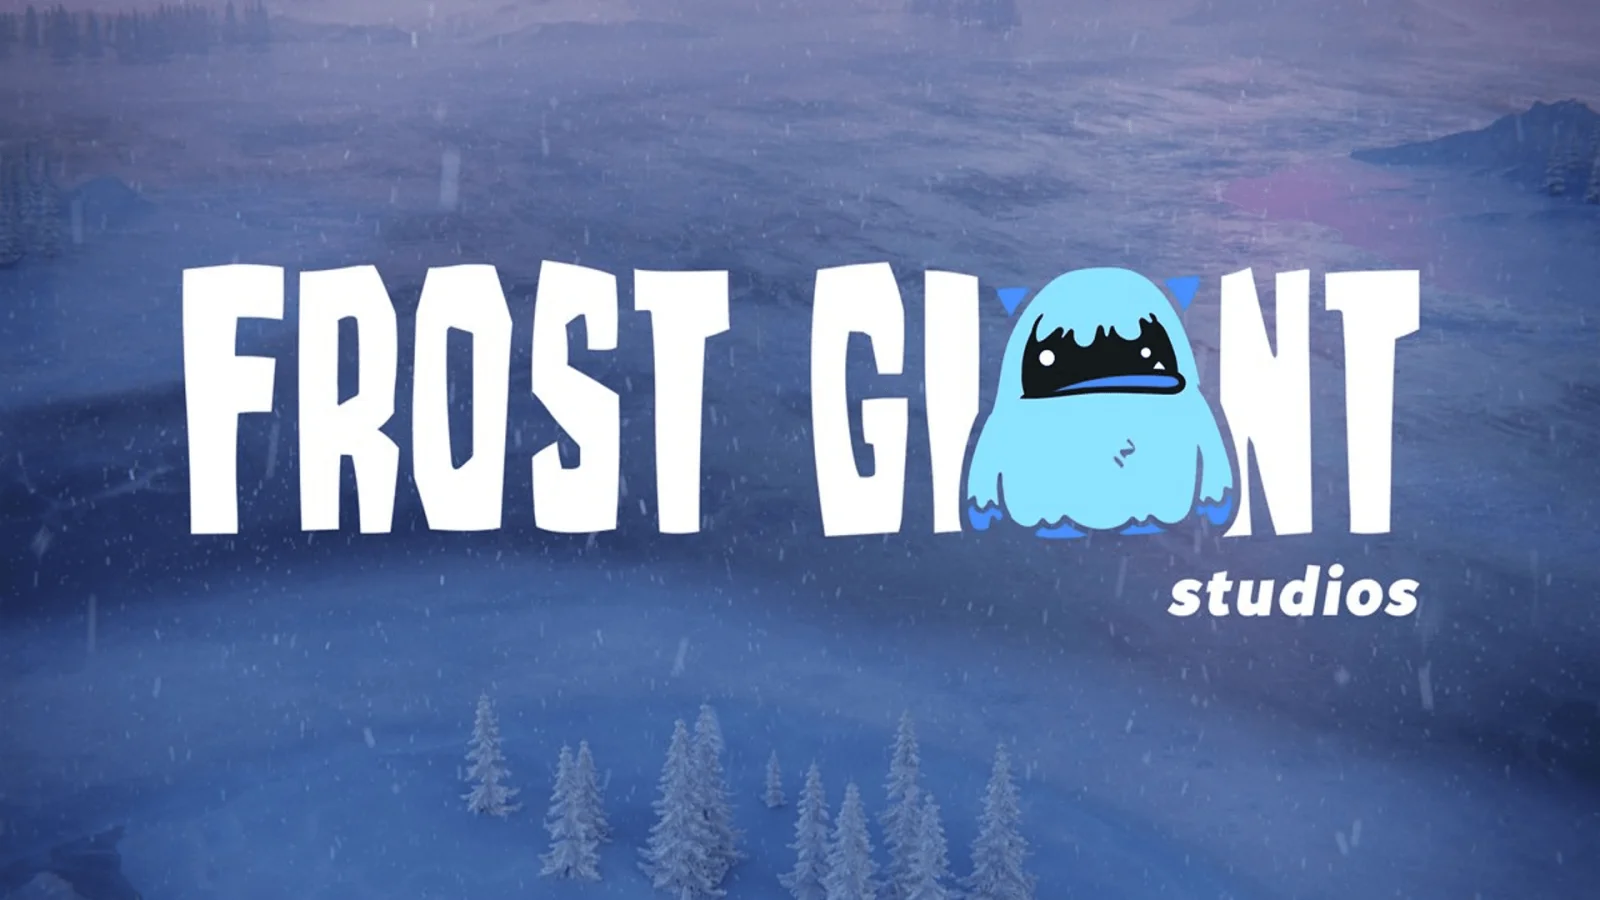 多名暴雪前资深设计师宣布组建新工作室Frost Giant Studio